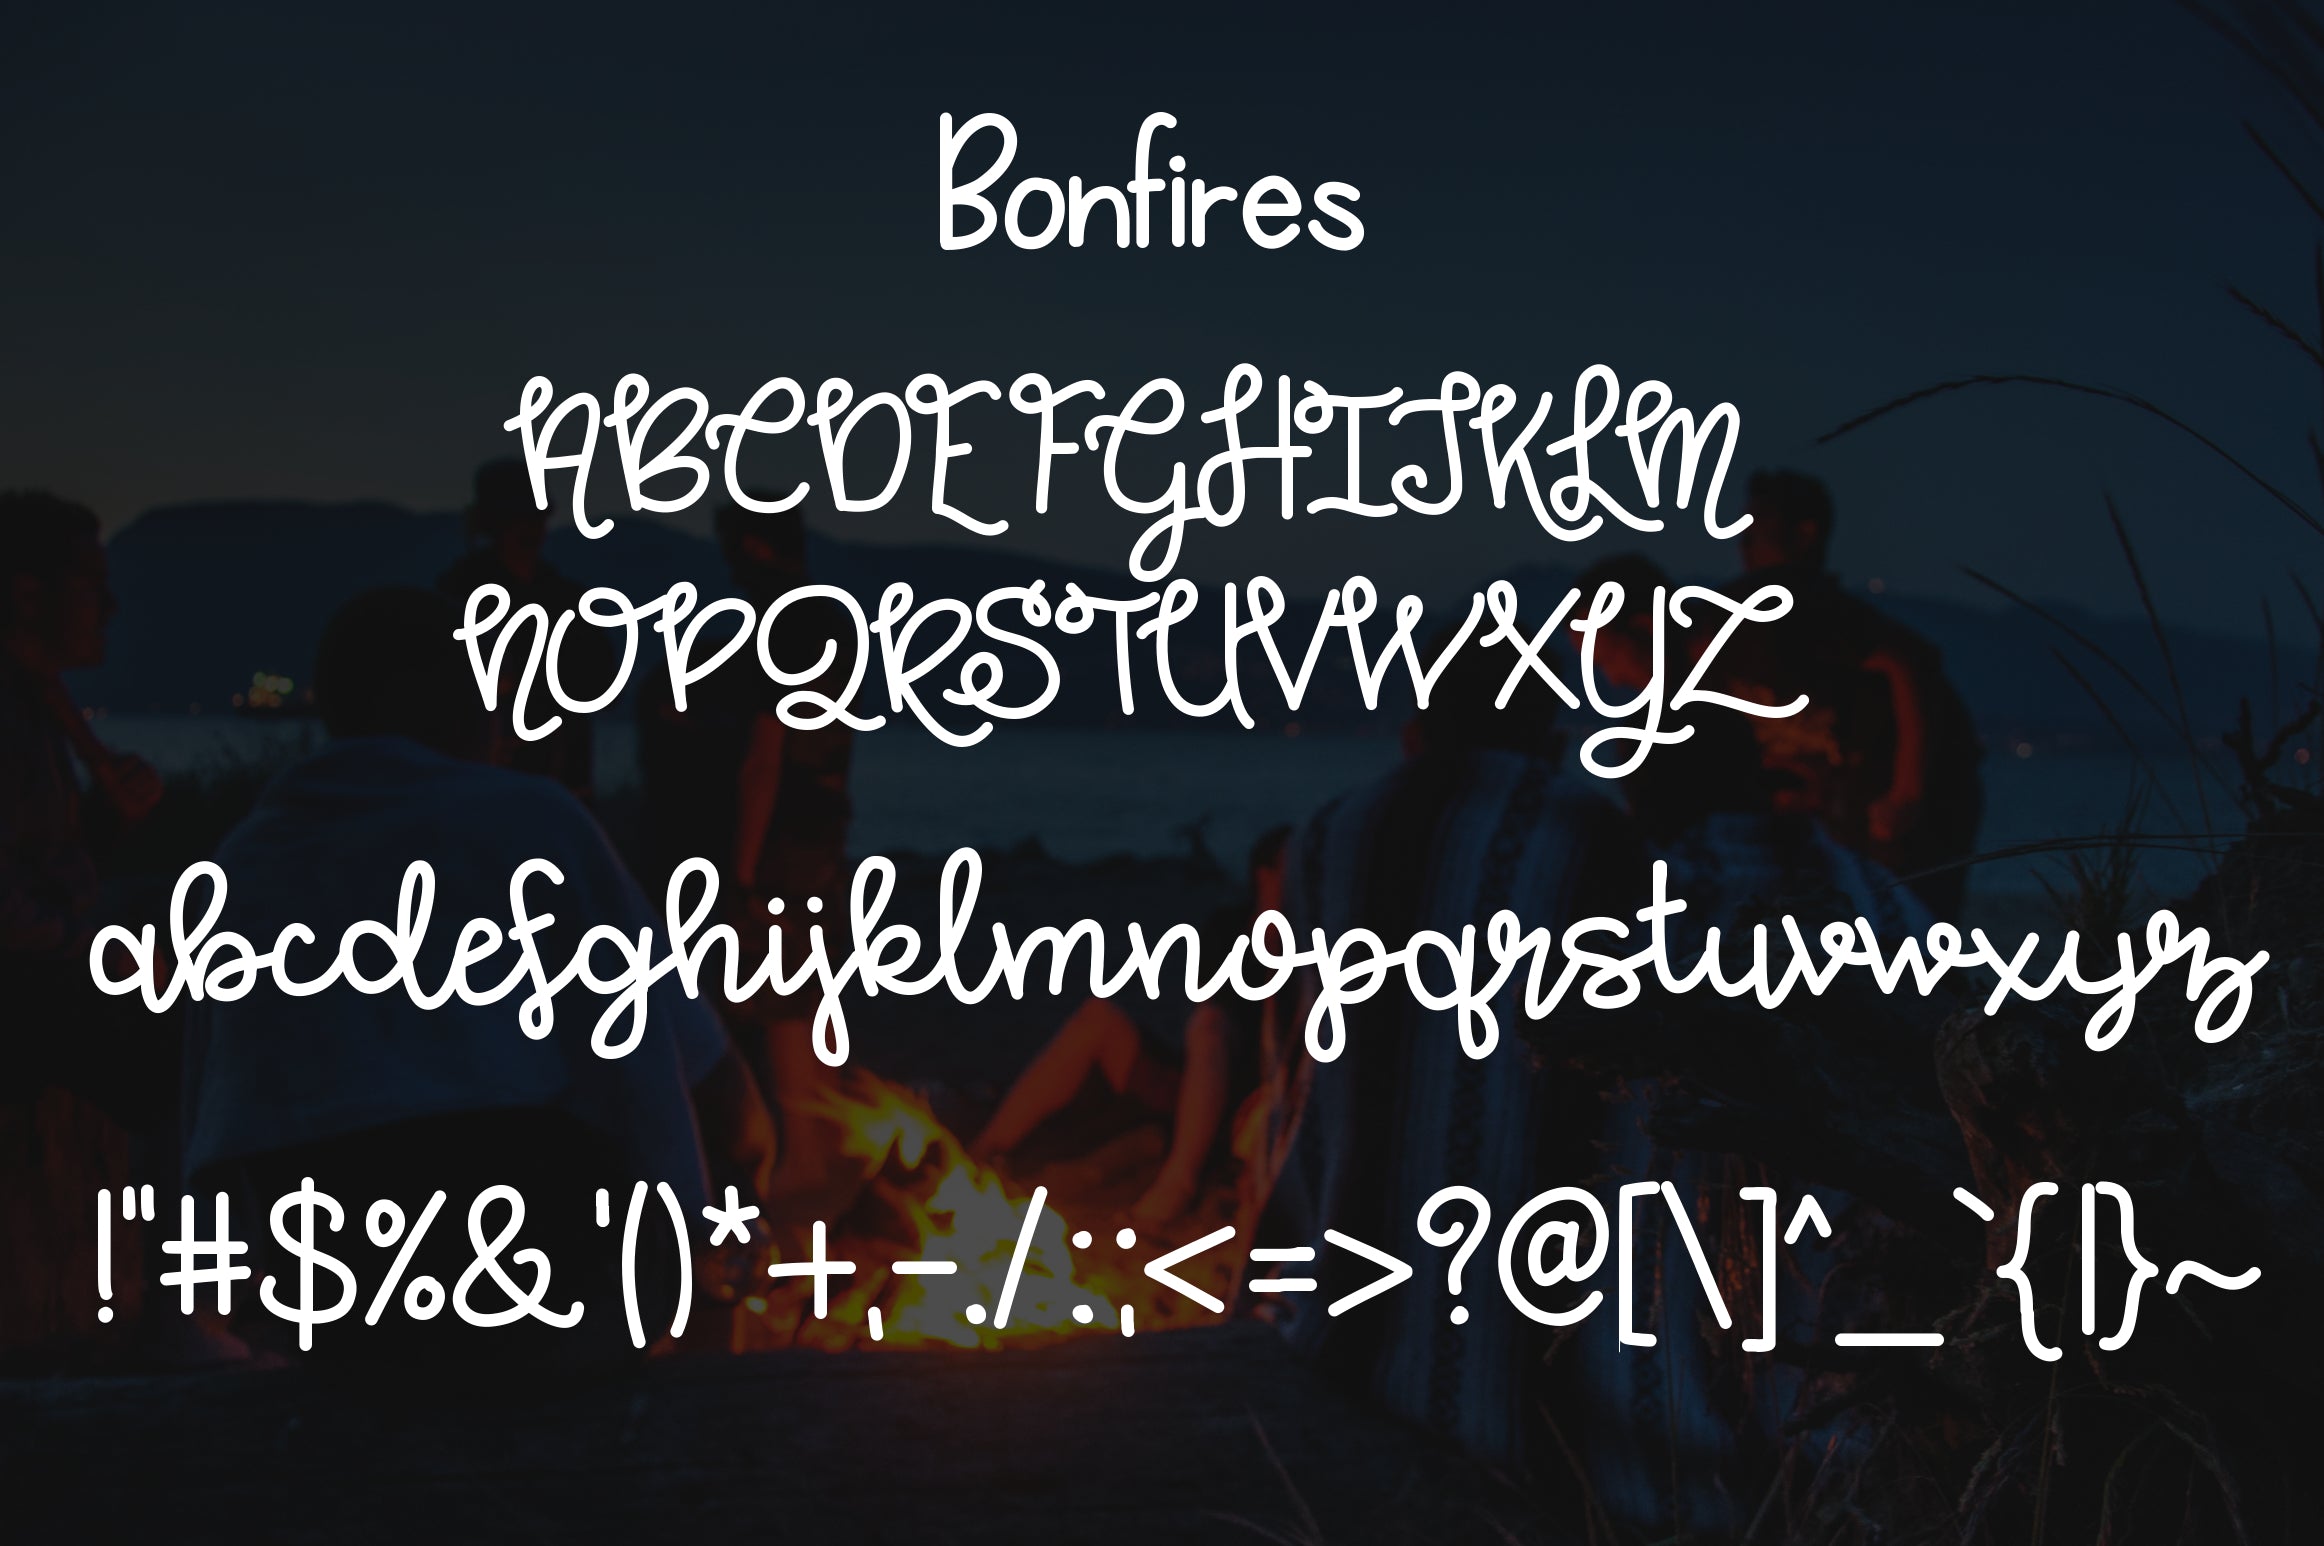 Bonfires & Beaches a Font Duo